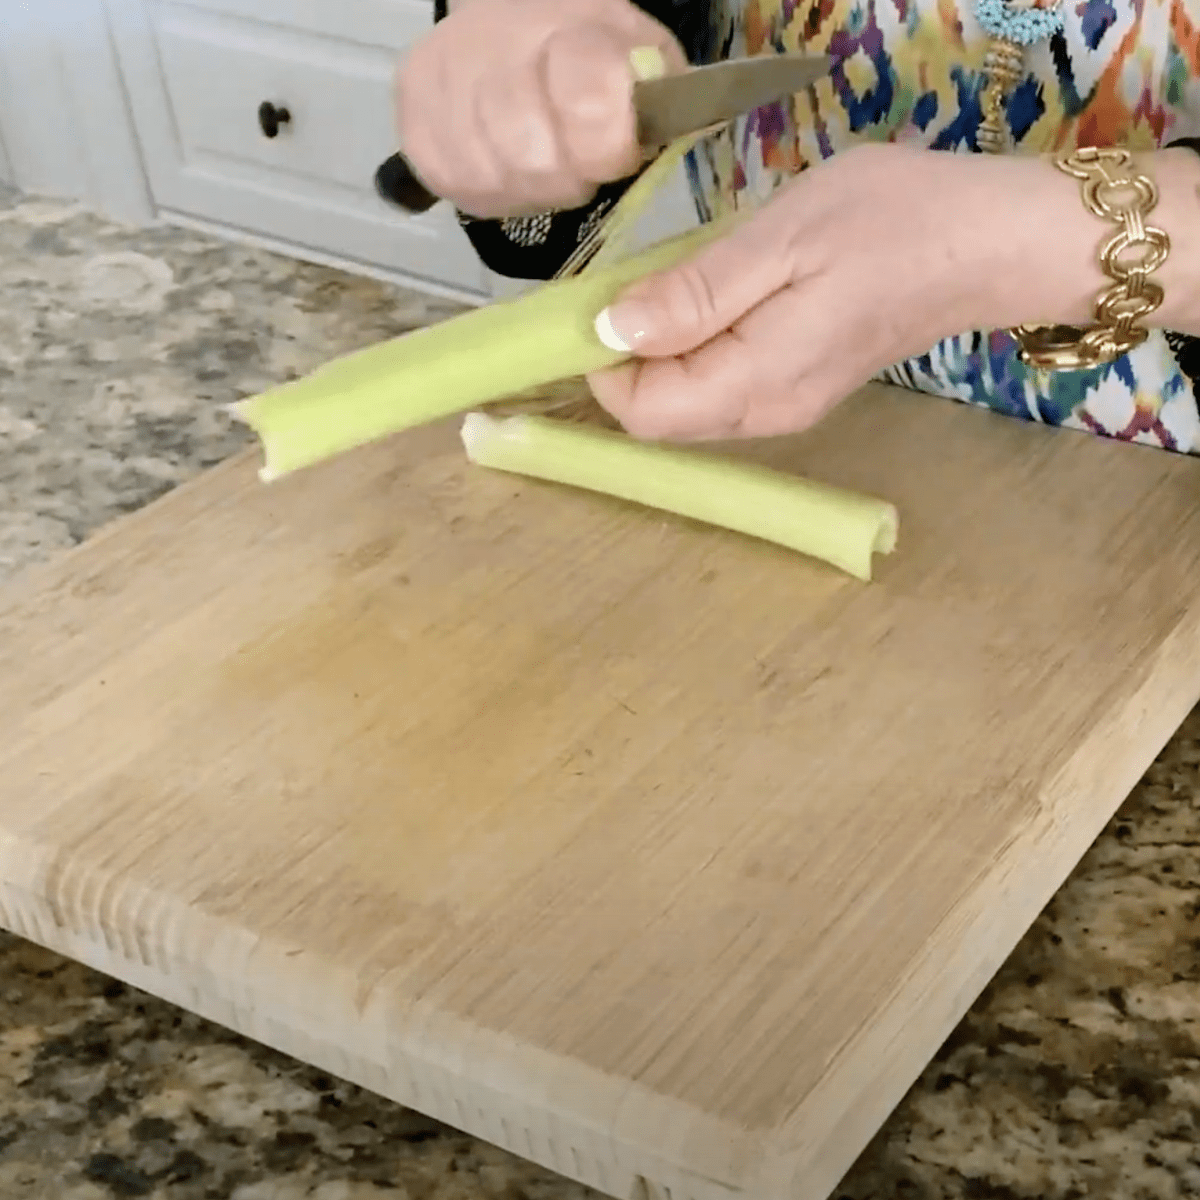 peeling celery with knife